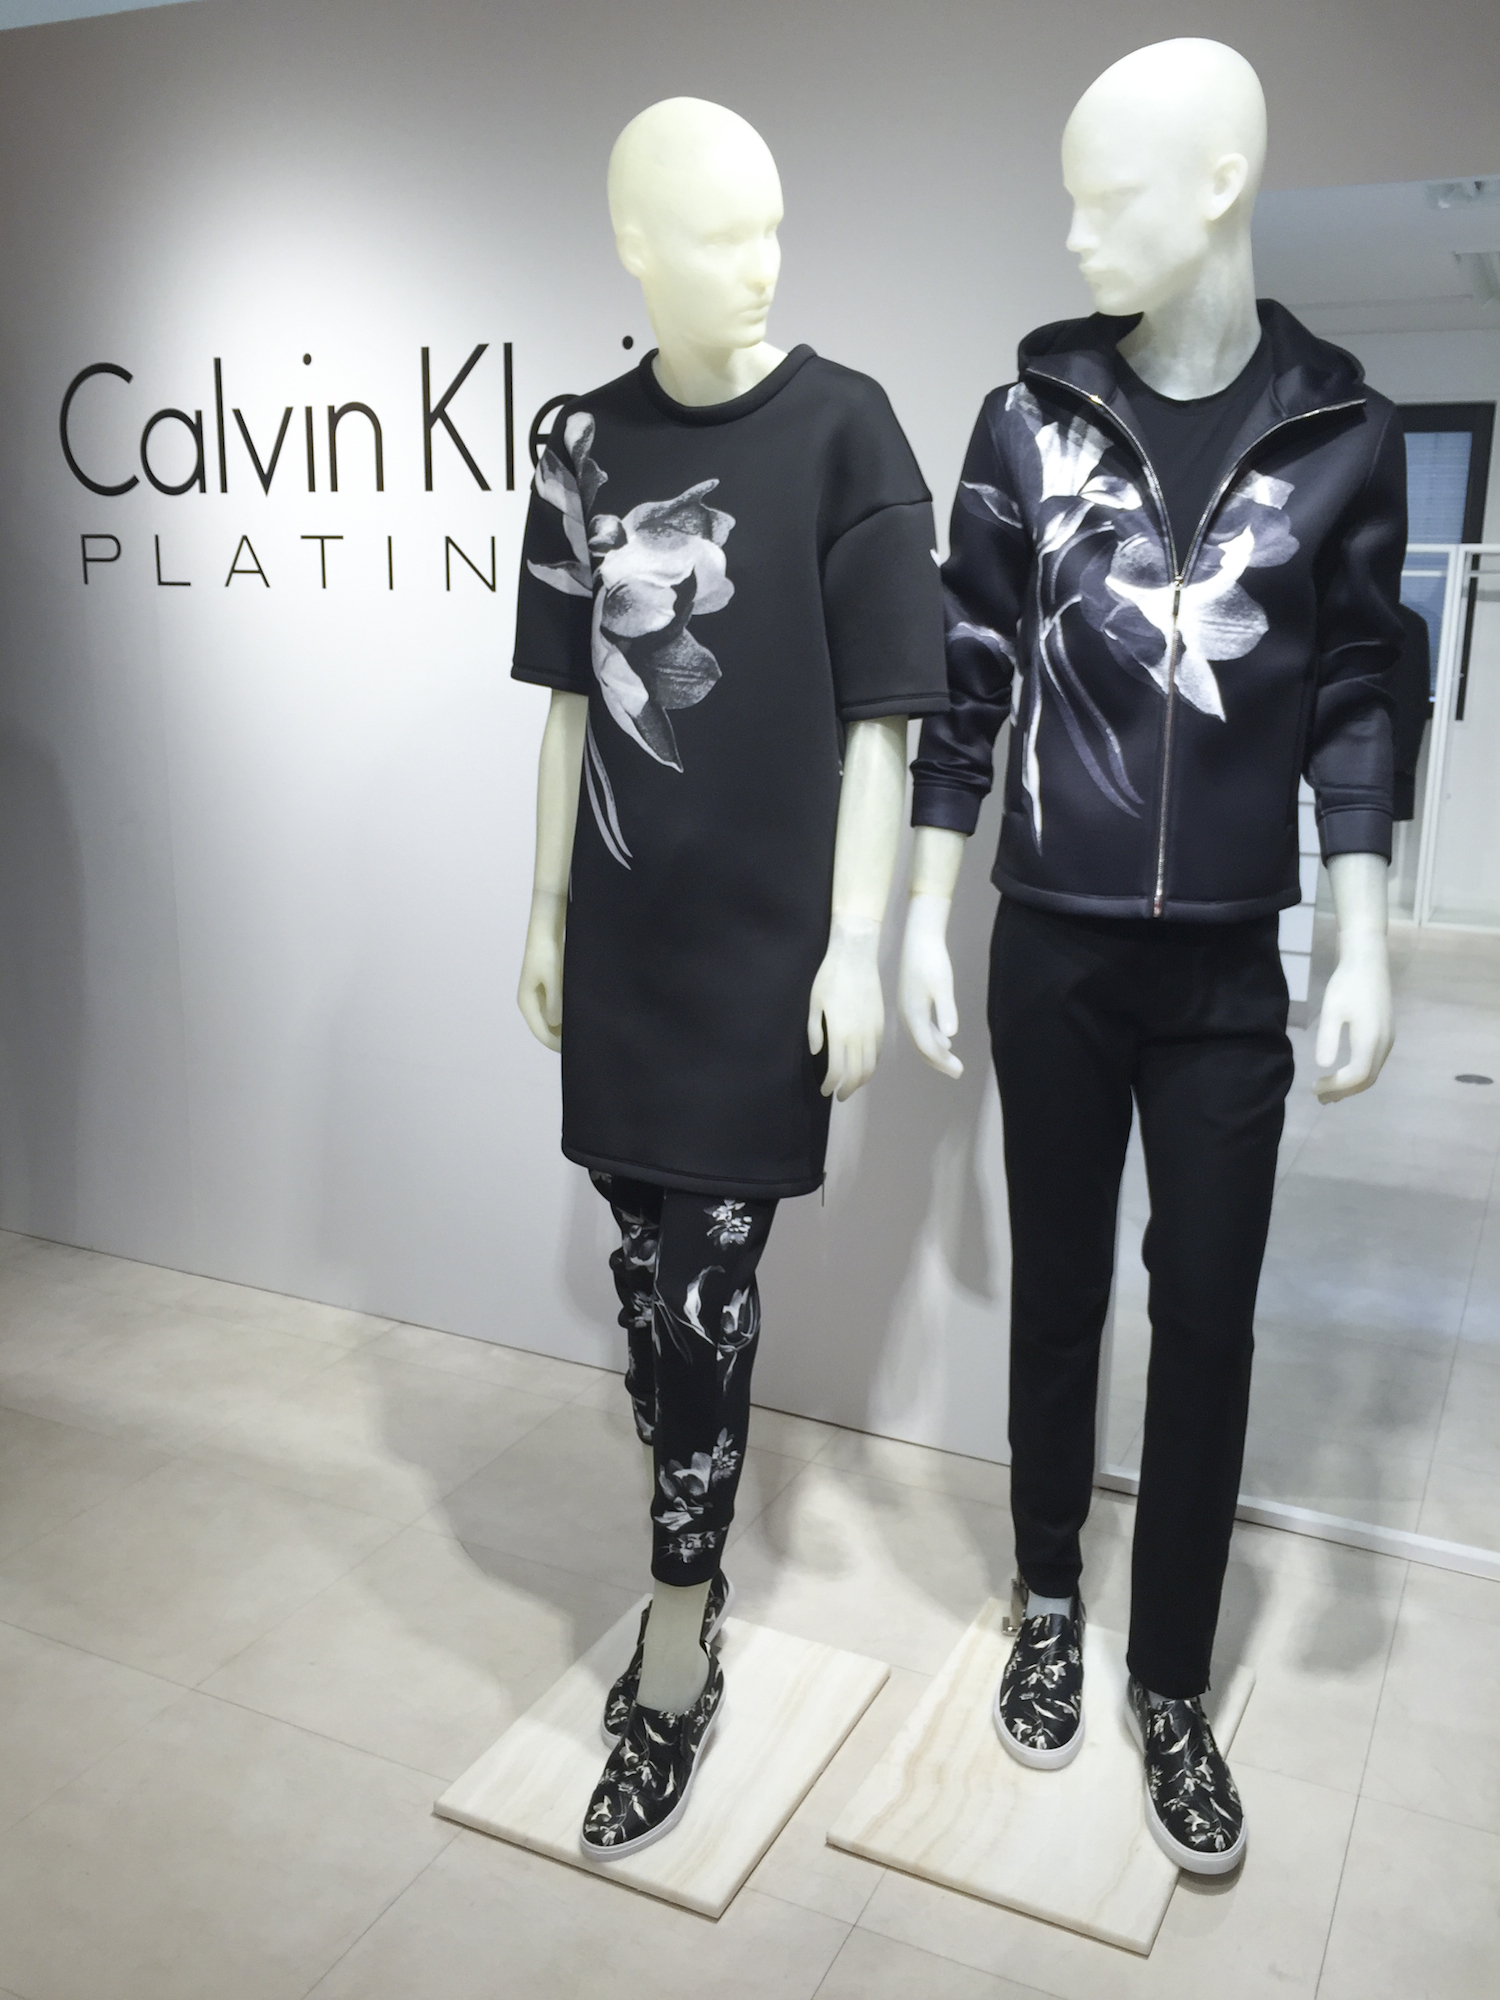 Calvin Klein PLATINUM Floral Exposure_6